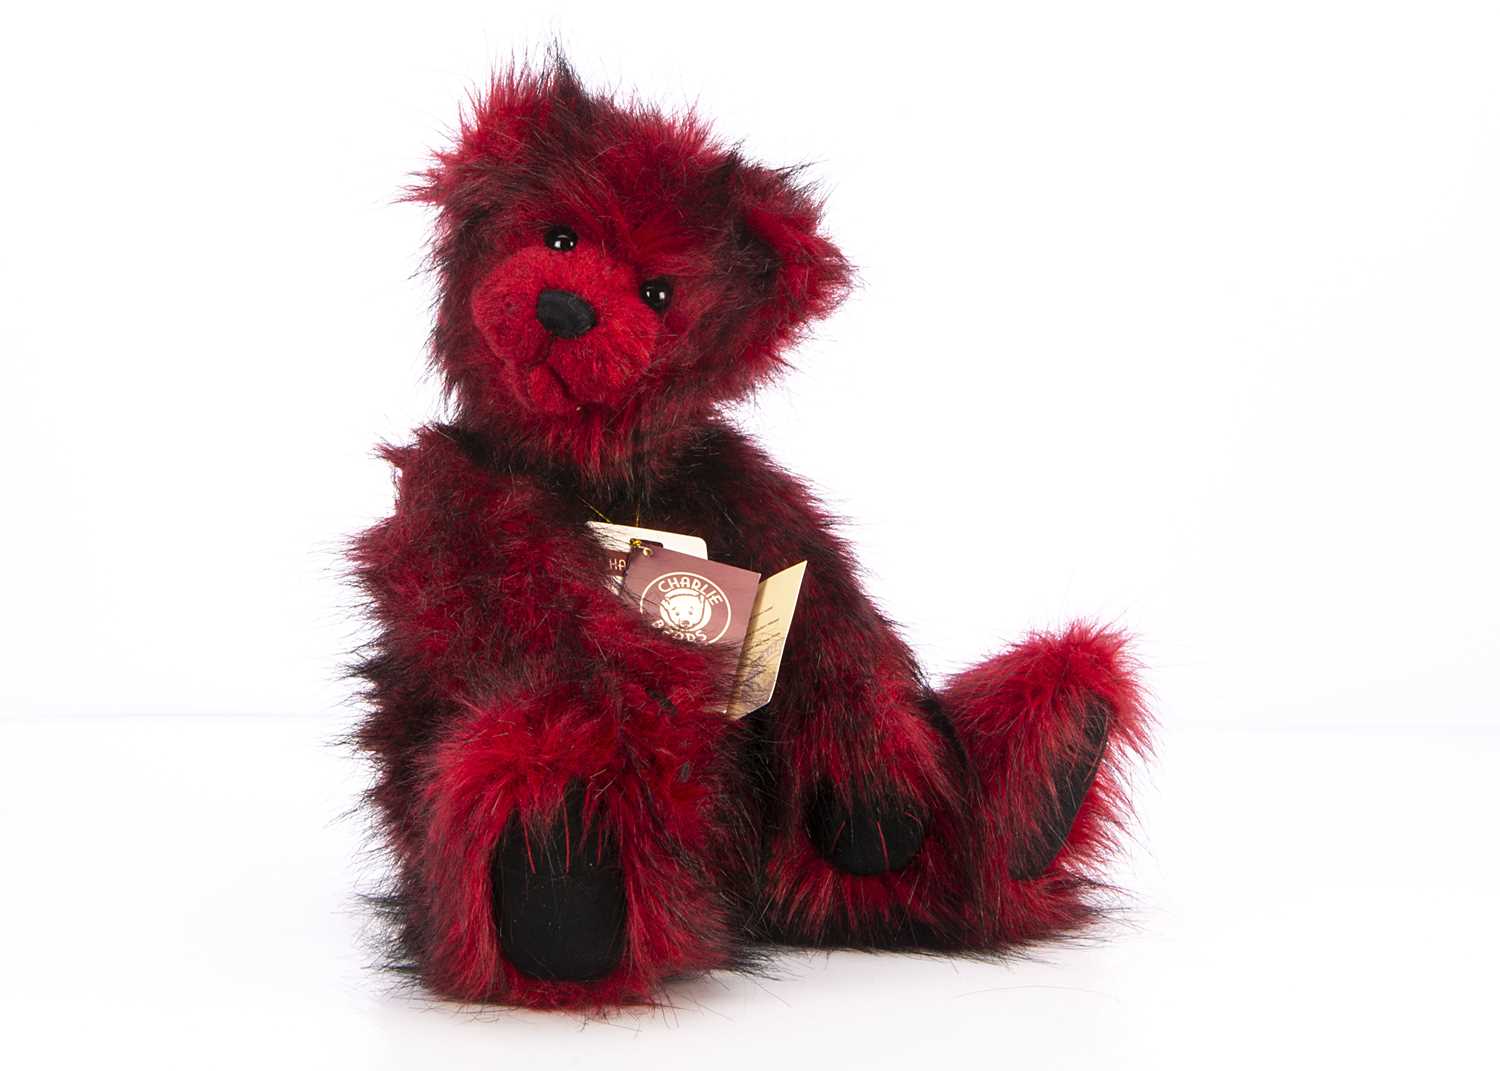 Lot 34 - A limited edition Charlie Bears Giga ‘bookend' teddy bear